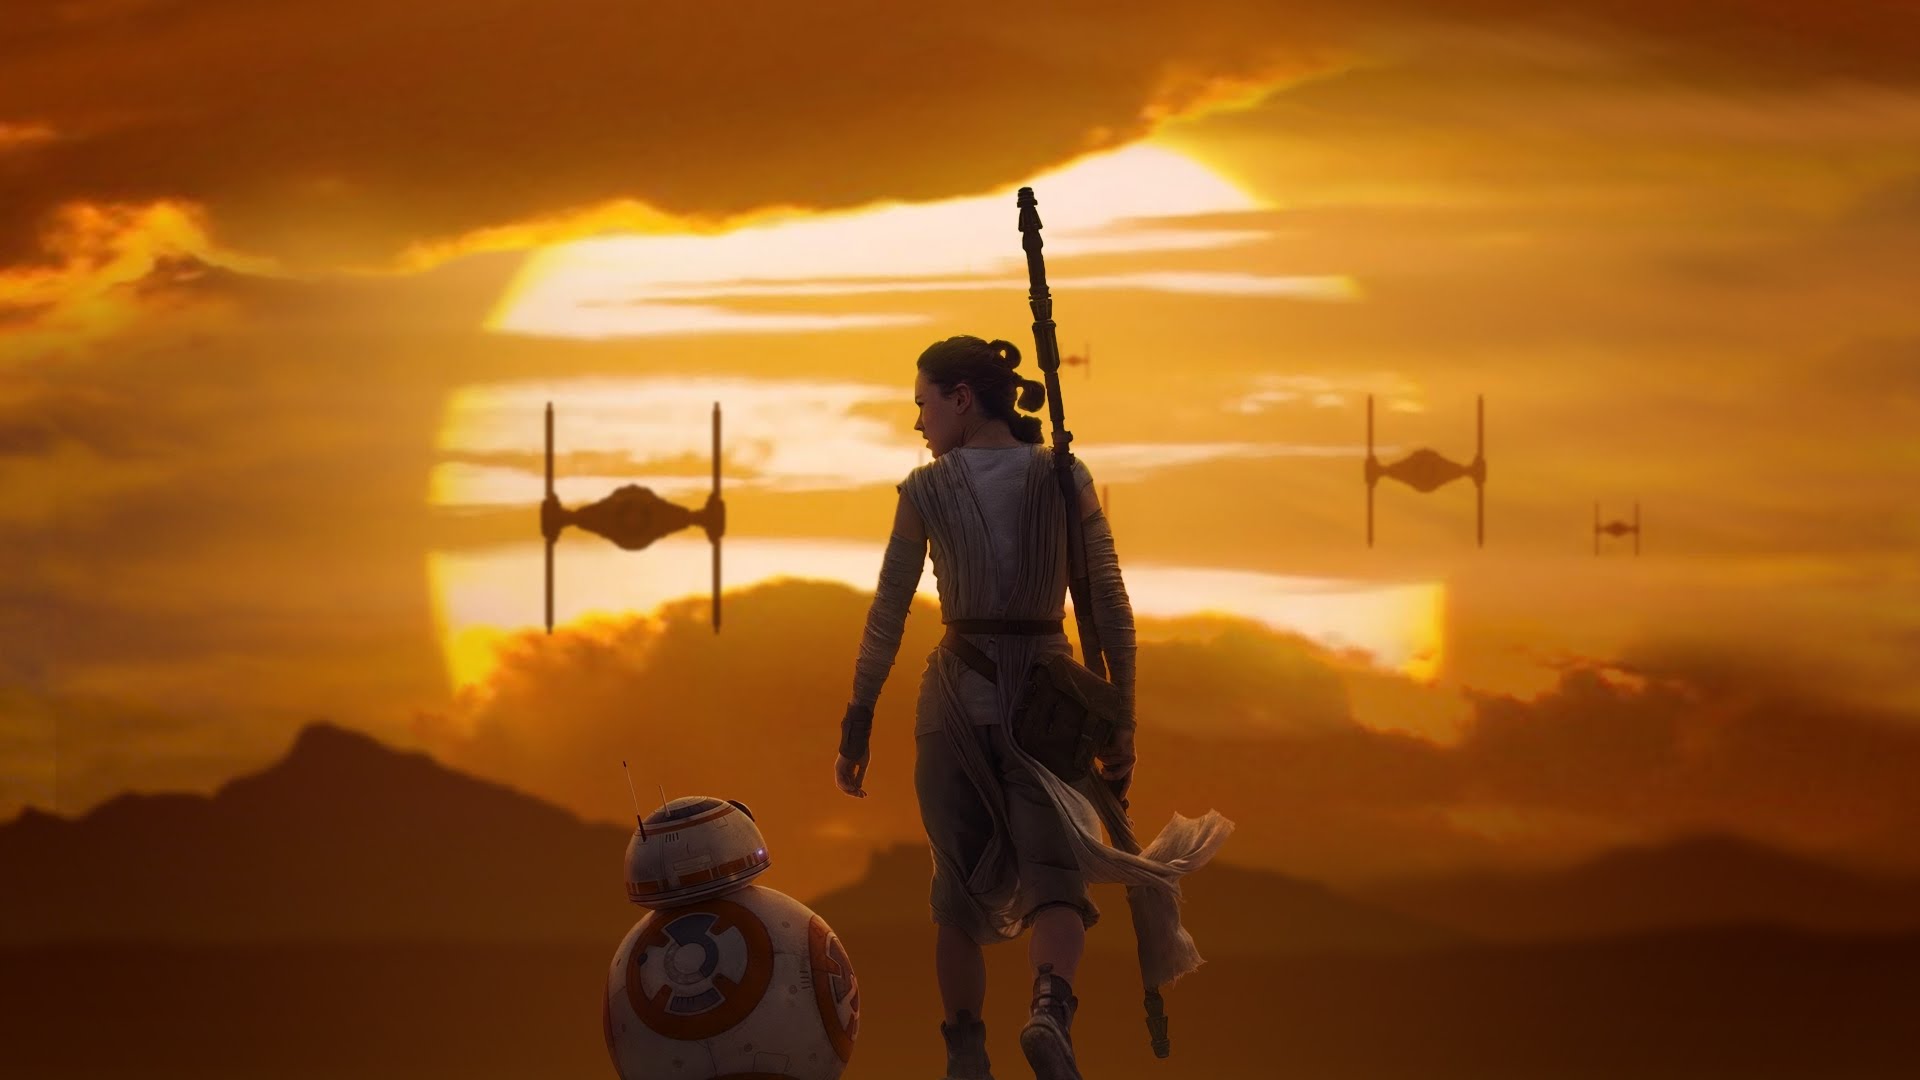 Звёздные войны: Пробуждение Силы (Star Wars: The Force Awakens) 2015